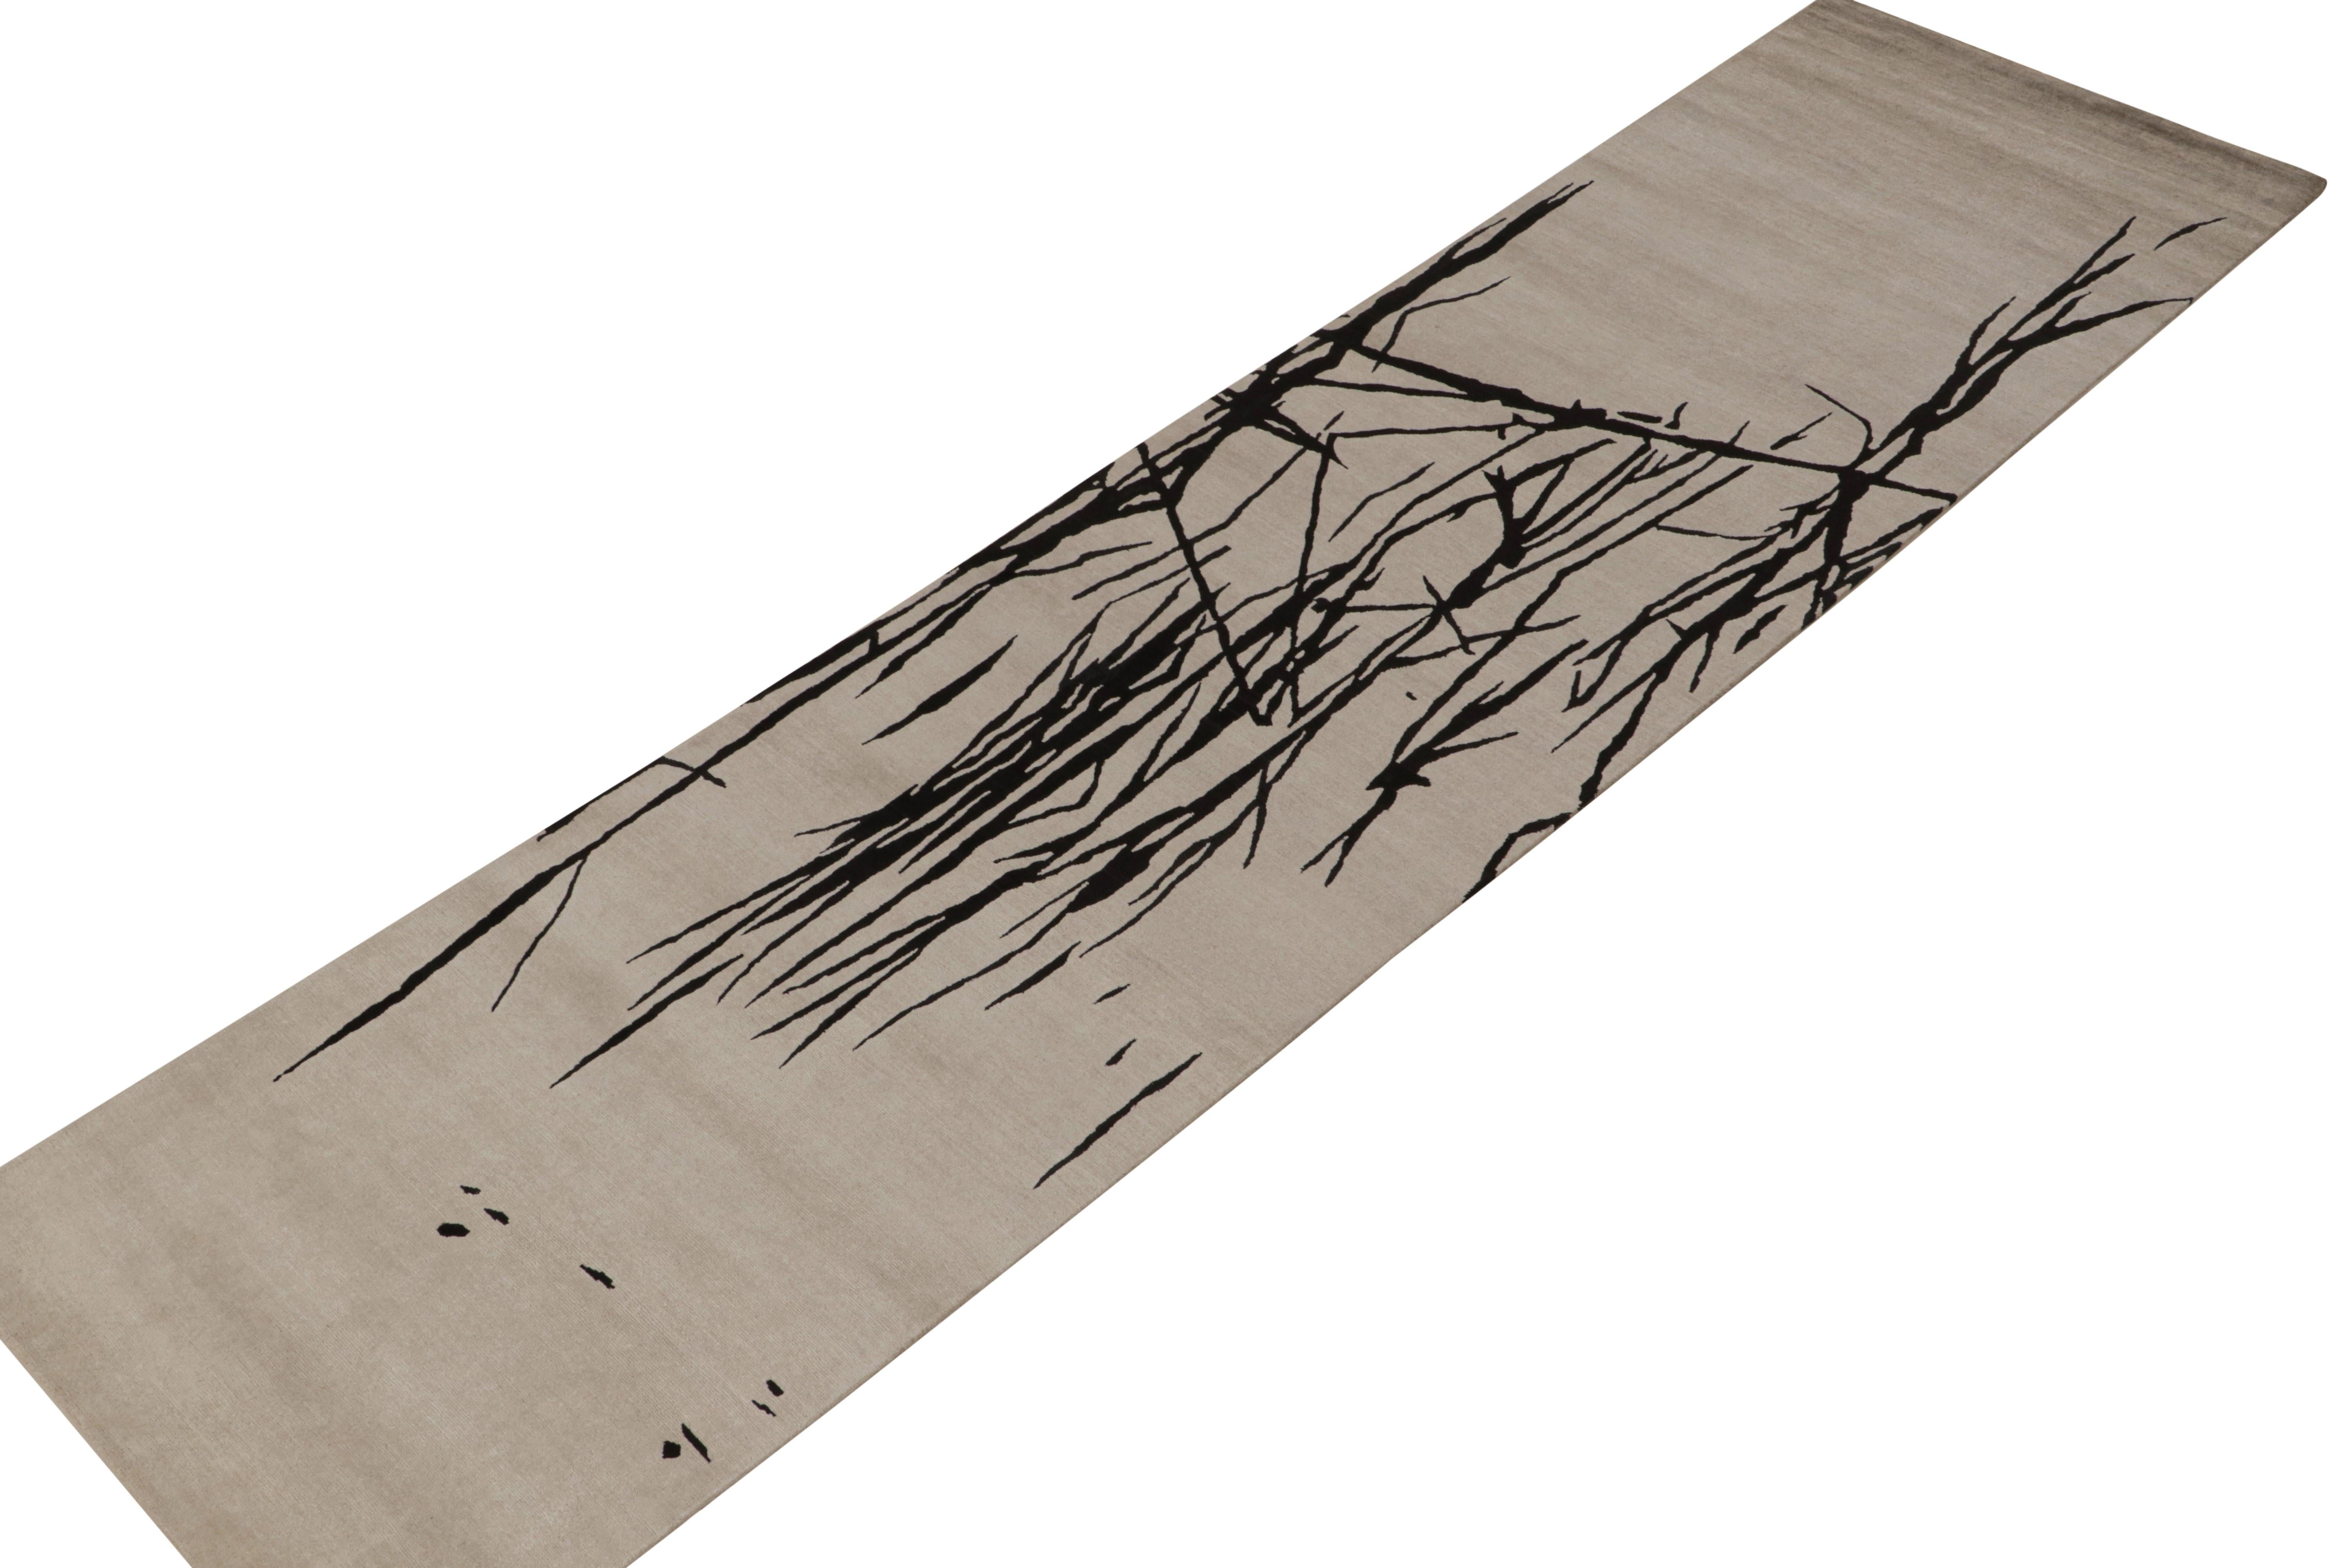 Dieser abstrakte Läufer 3x12 aus Wolle und Seide, handgeknüpft, ist eine neue Ergänzung der Modern Collection'S von Rug & Kilim.

Über das Design: 

Das einzigartige Design setzt auf abstrakten Minimalismus mit kühnen schwarzen geometrischen Mustern